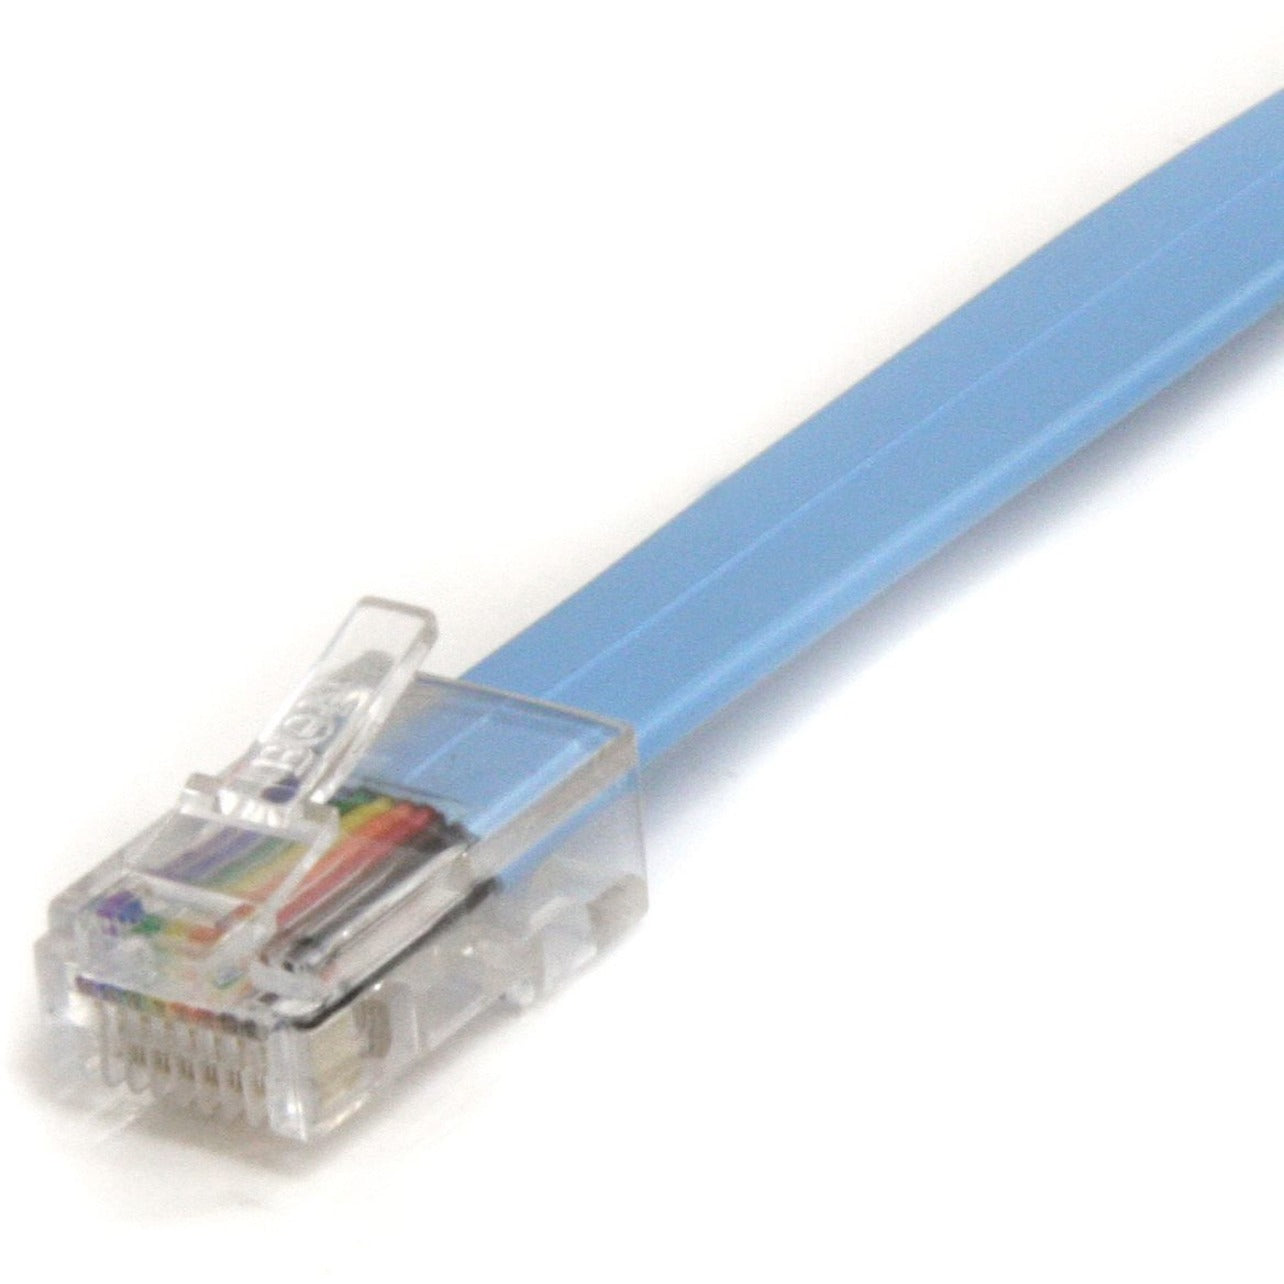 Marca StarTech.com ROLLOVERMM6 6 ft Cable de Rollover para Consola Cisco - RJ45 Ethernet M/M Moldeado Cobre Azul